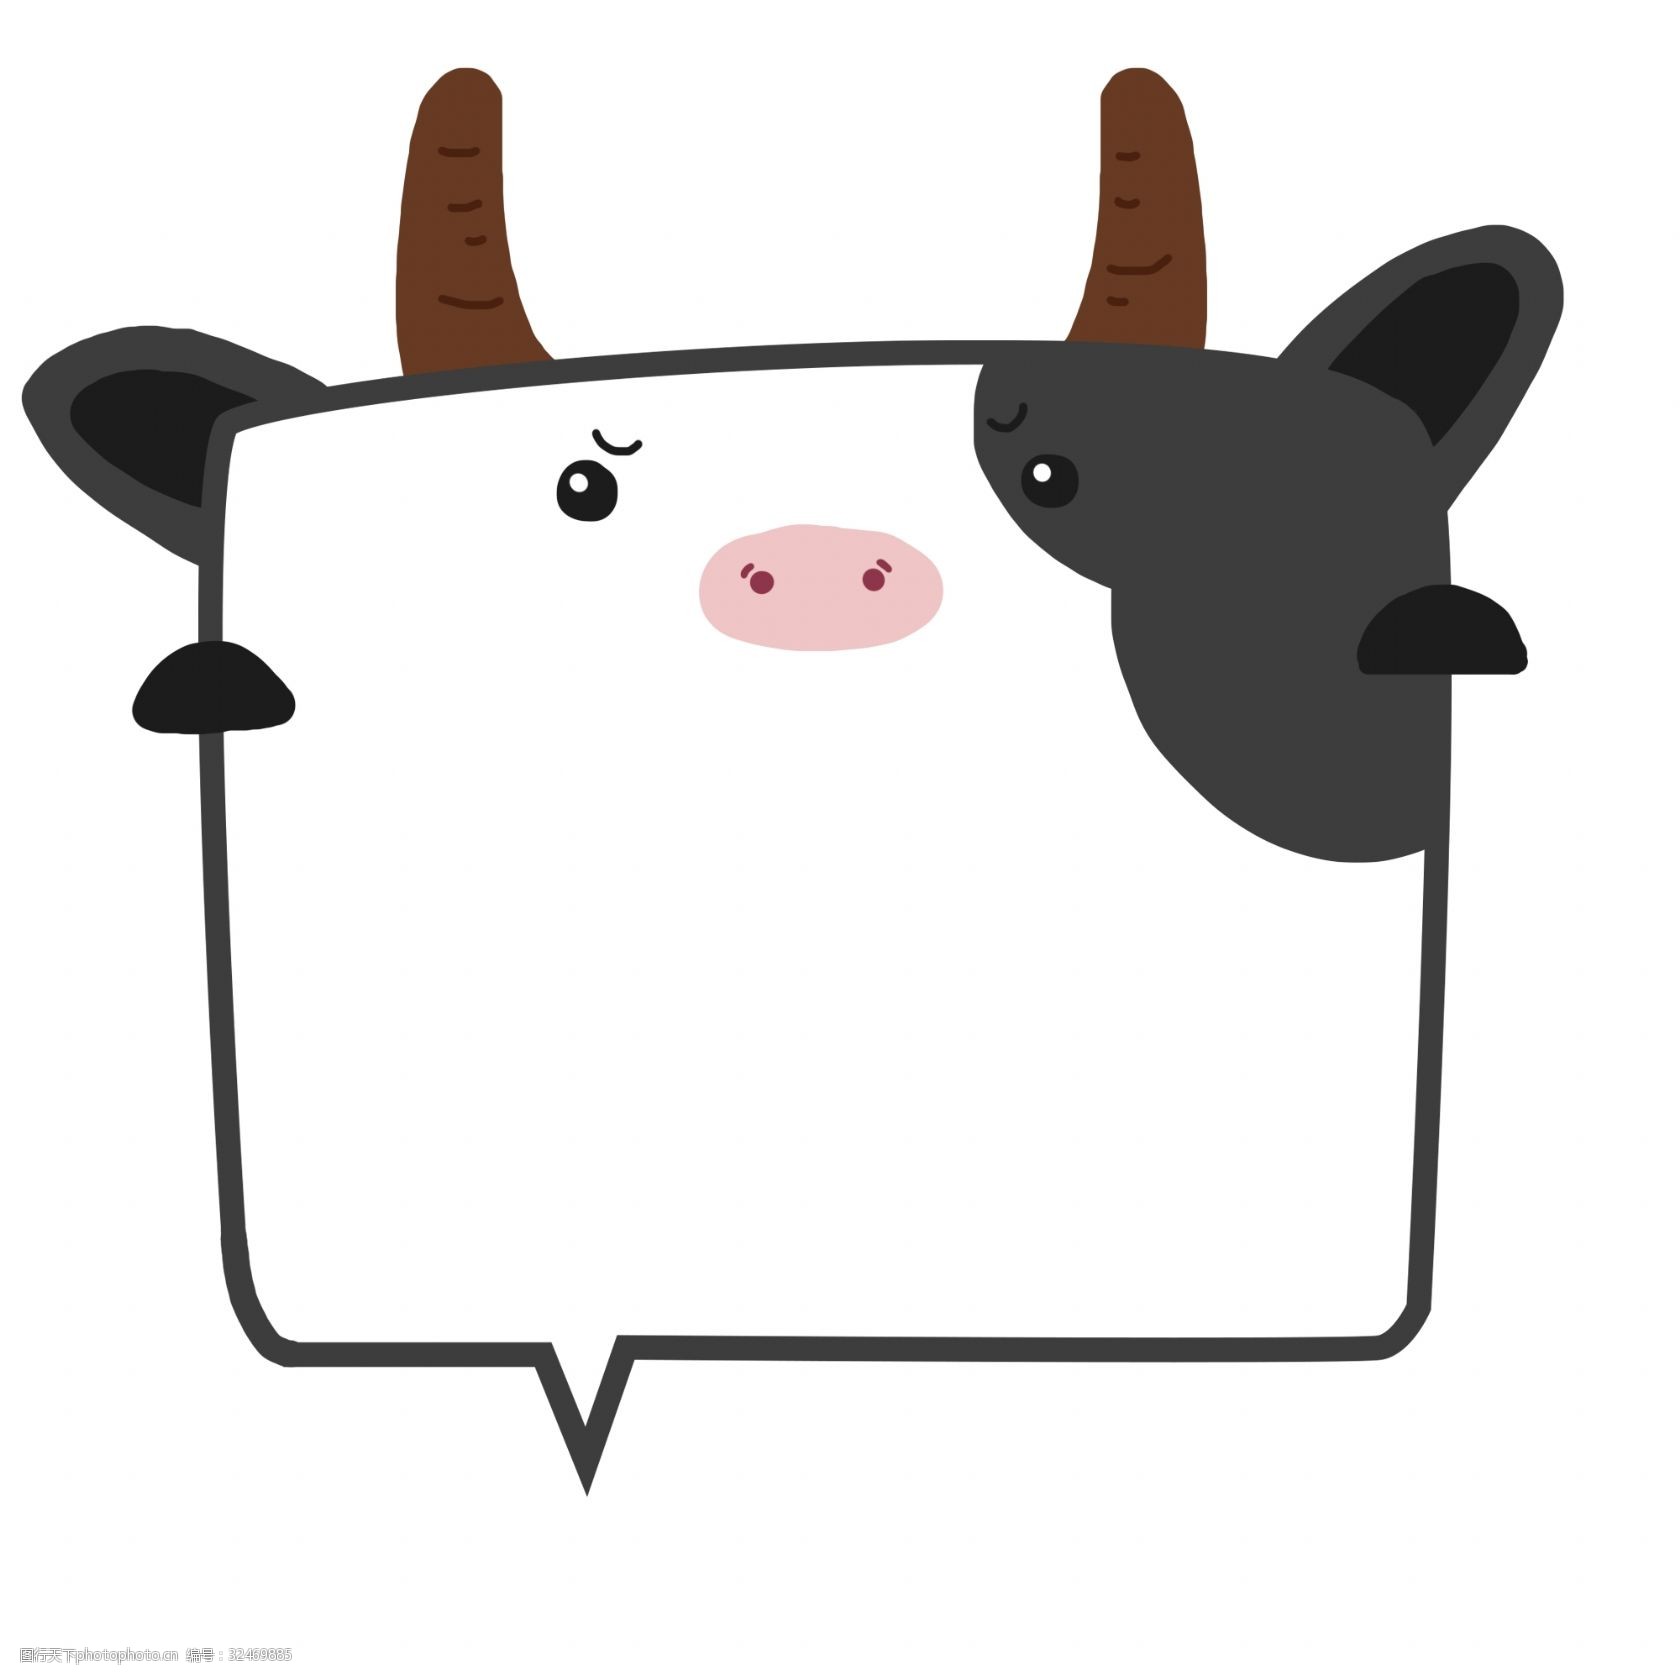 关键词:手绘动物奶牛边框插画 手绘奶牛 动物奶牛 花牛边框 文本框